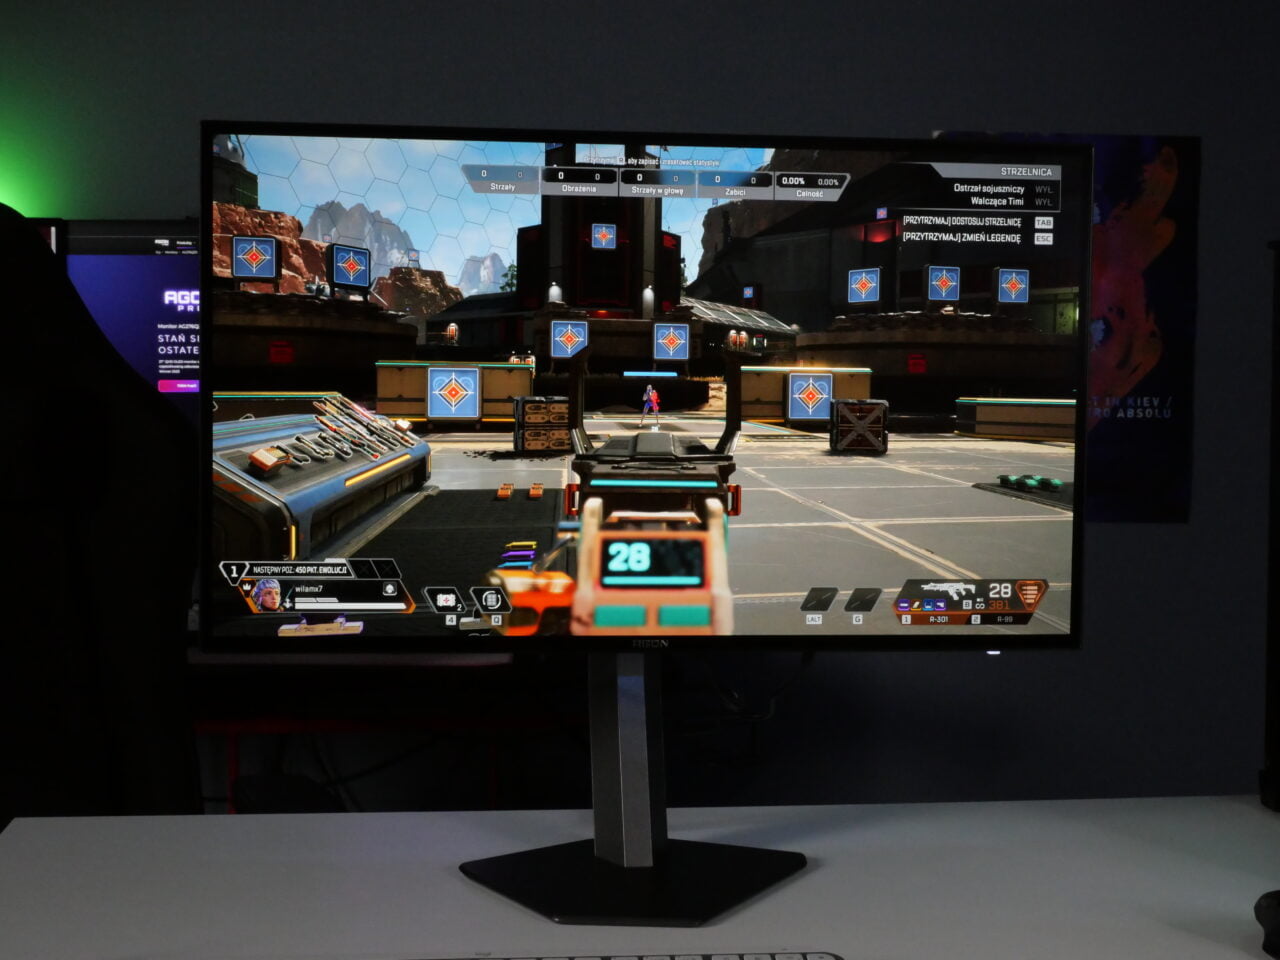 Monitor komputerowy wyświetlający grę wideo w stylu strzelanki, ustawiony w pomieszczeniu z kolorowym oświetleniem LED.